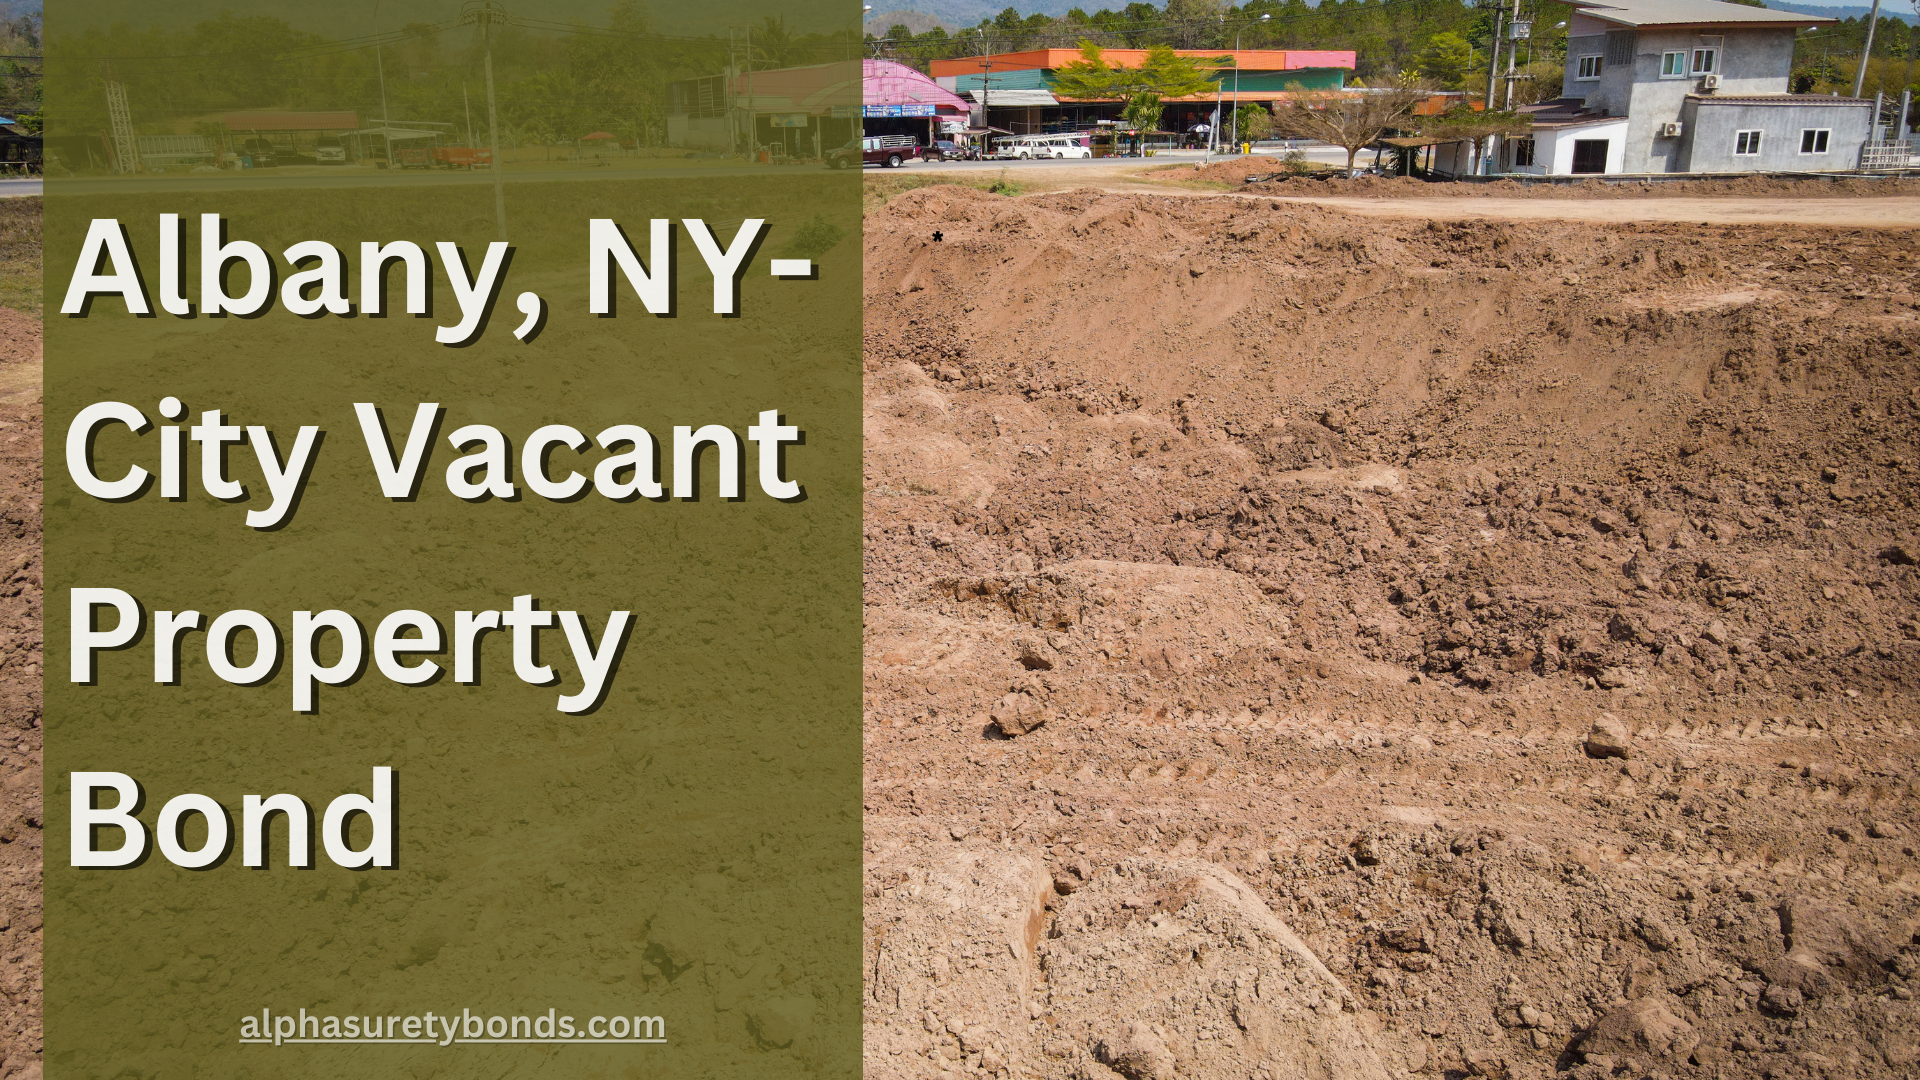 Albany, NY-City Vacant Property Bond